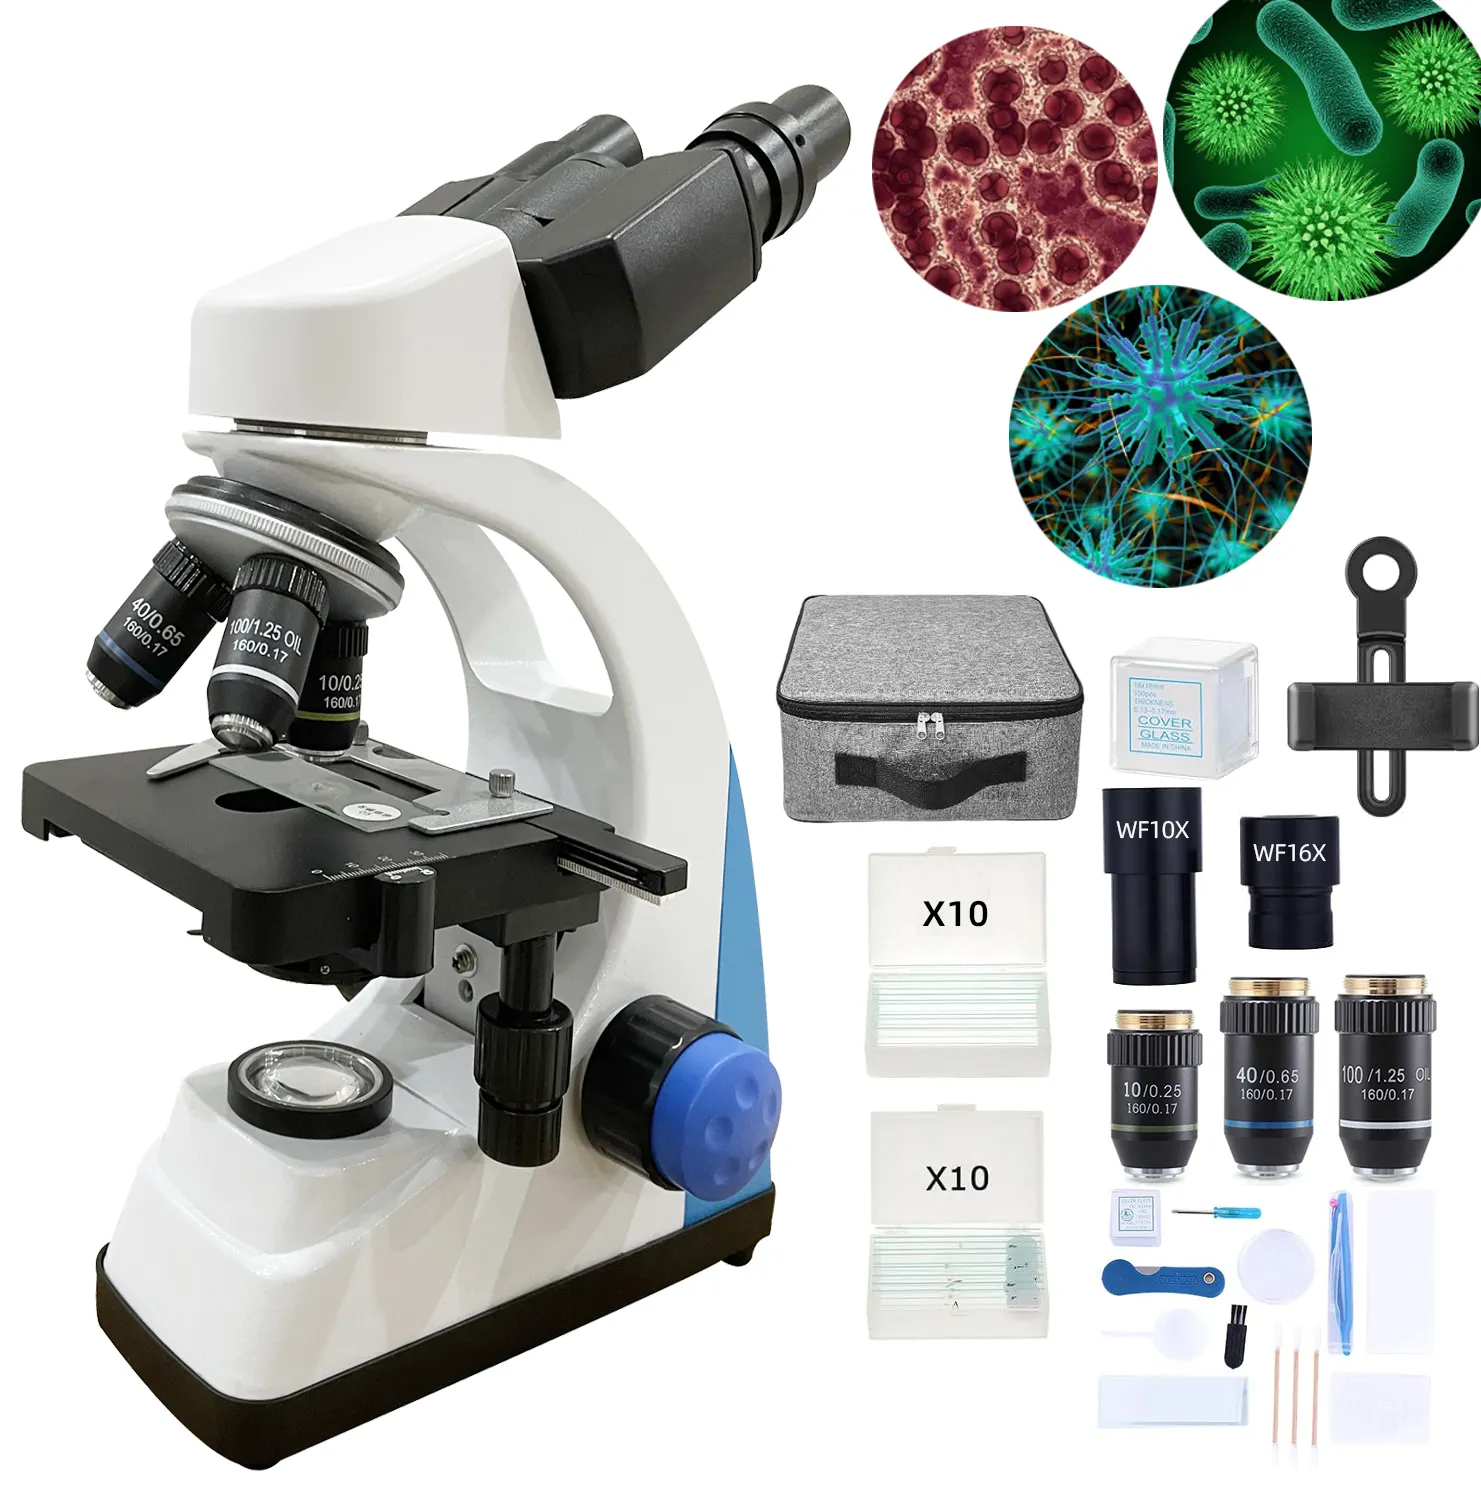 XSP-506 핫 세일 쌍안 의료 디지털 생물학 현미경 올림푸스 실험실 쌍안 현미경